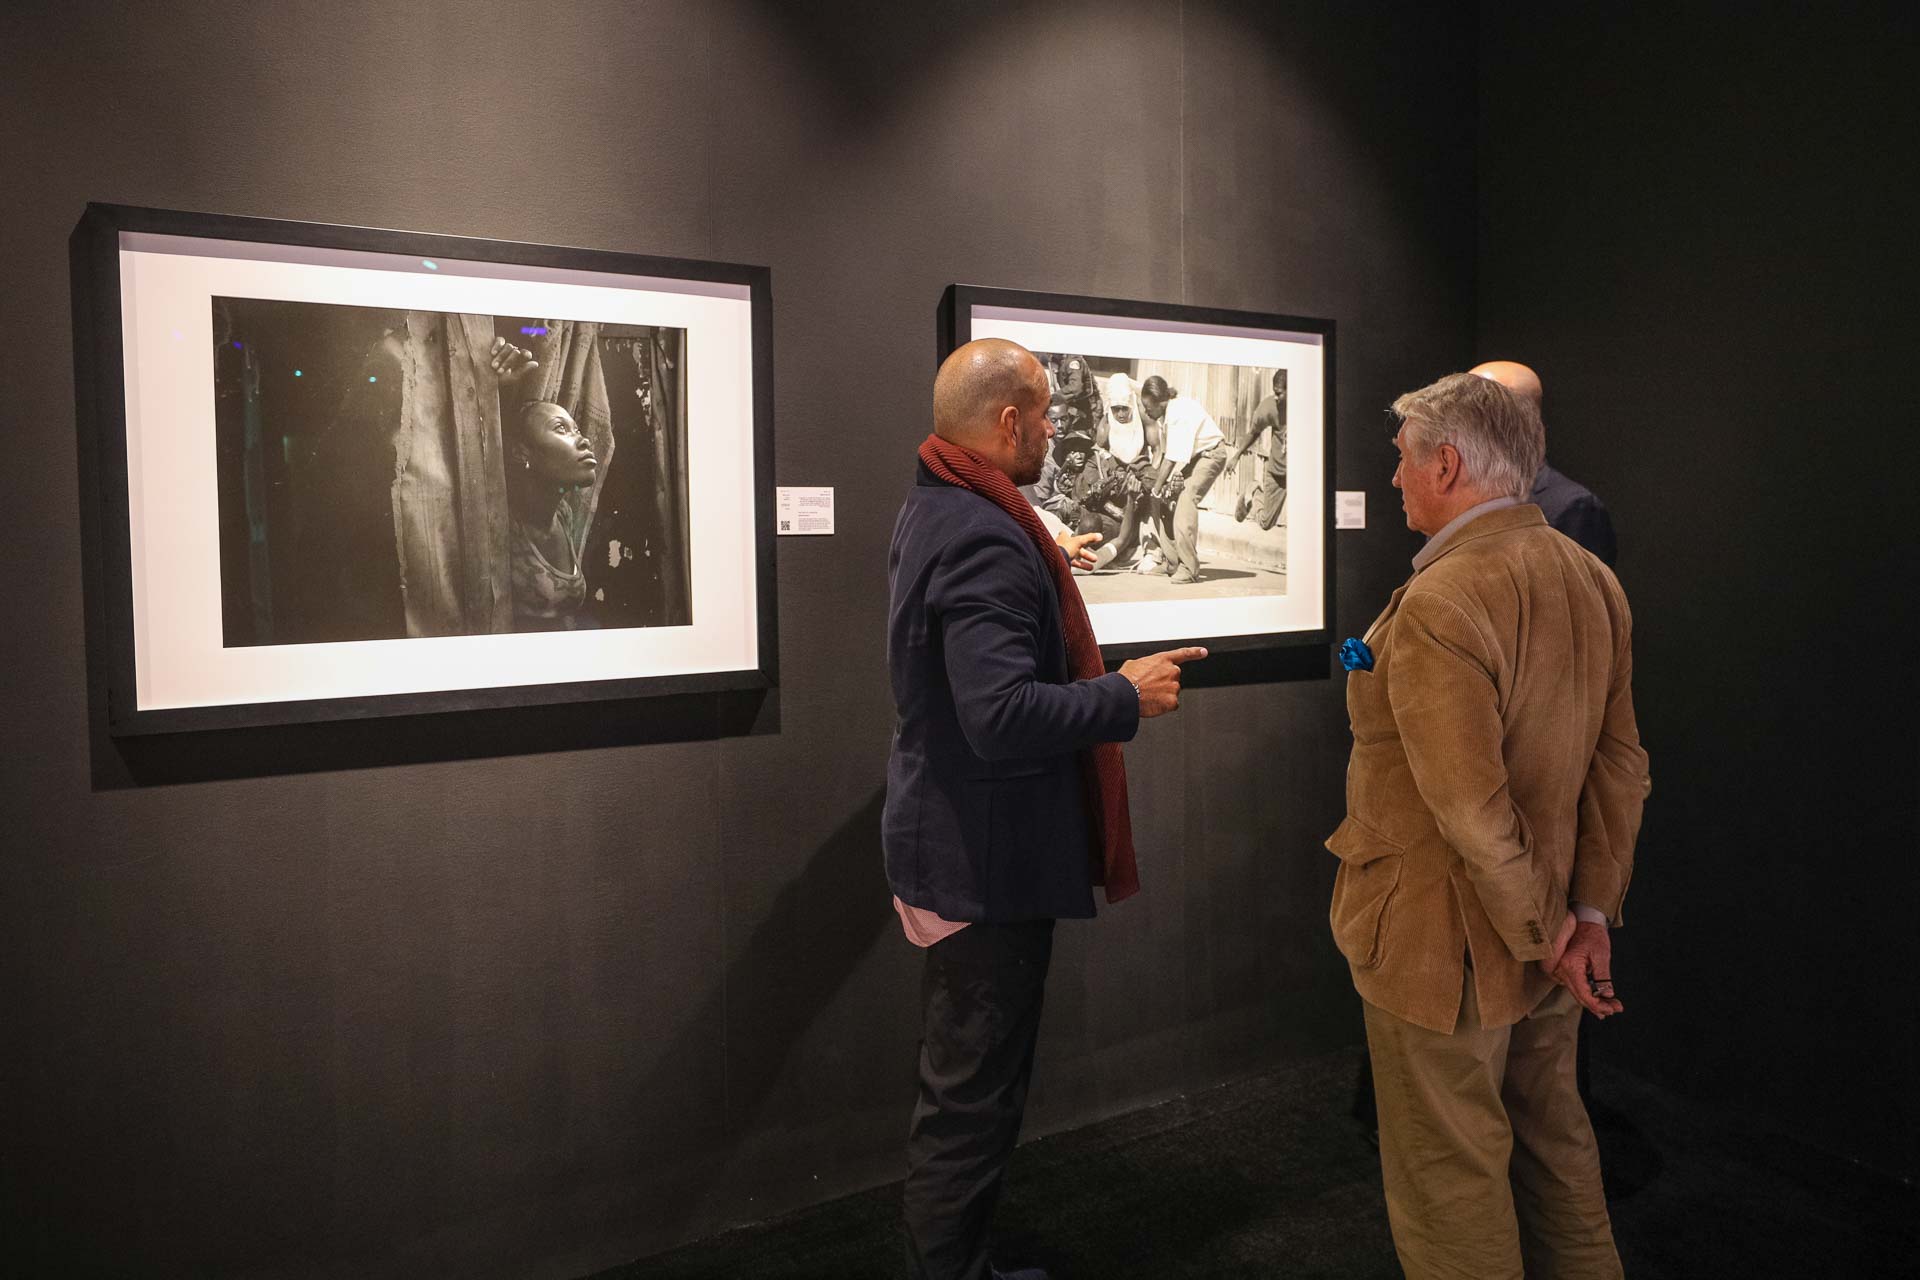 المصور إسدراس إم سواريز في معرض لحظات في إكسبوجر 2018